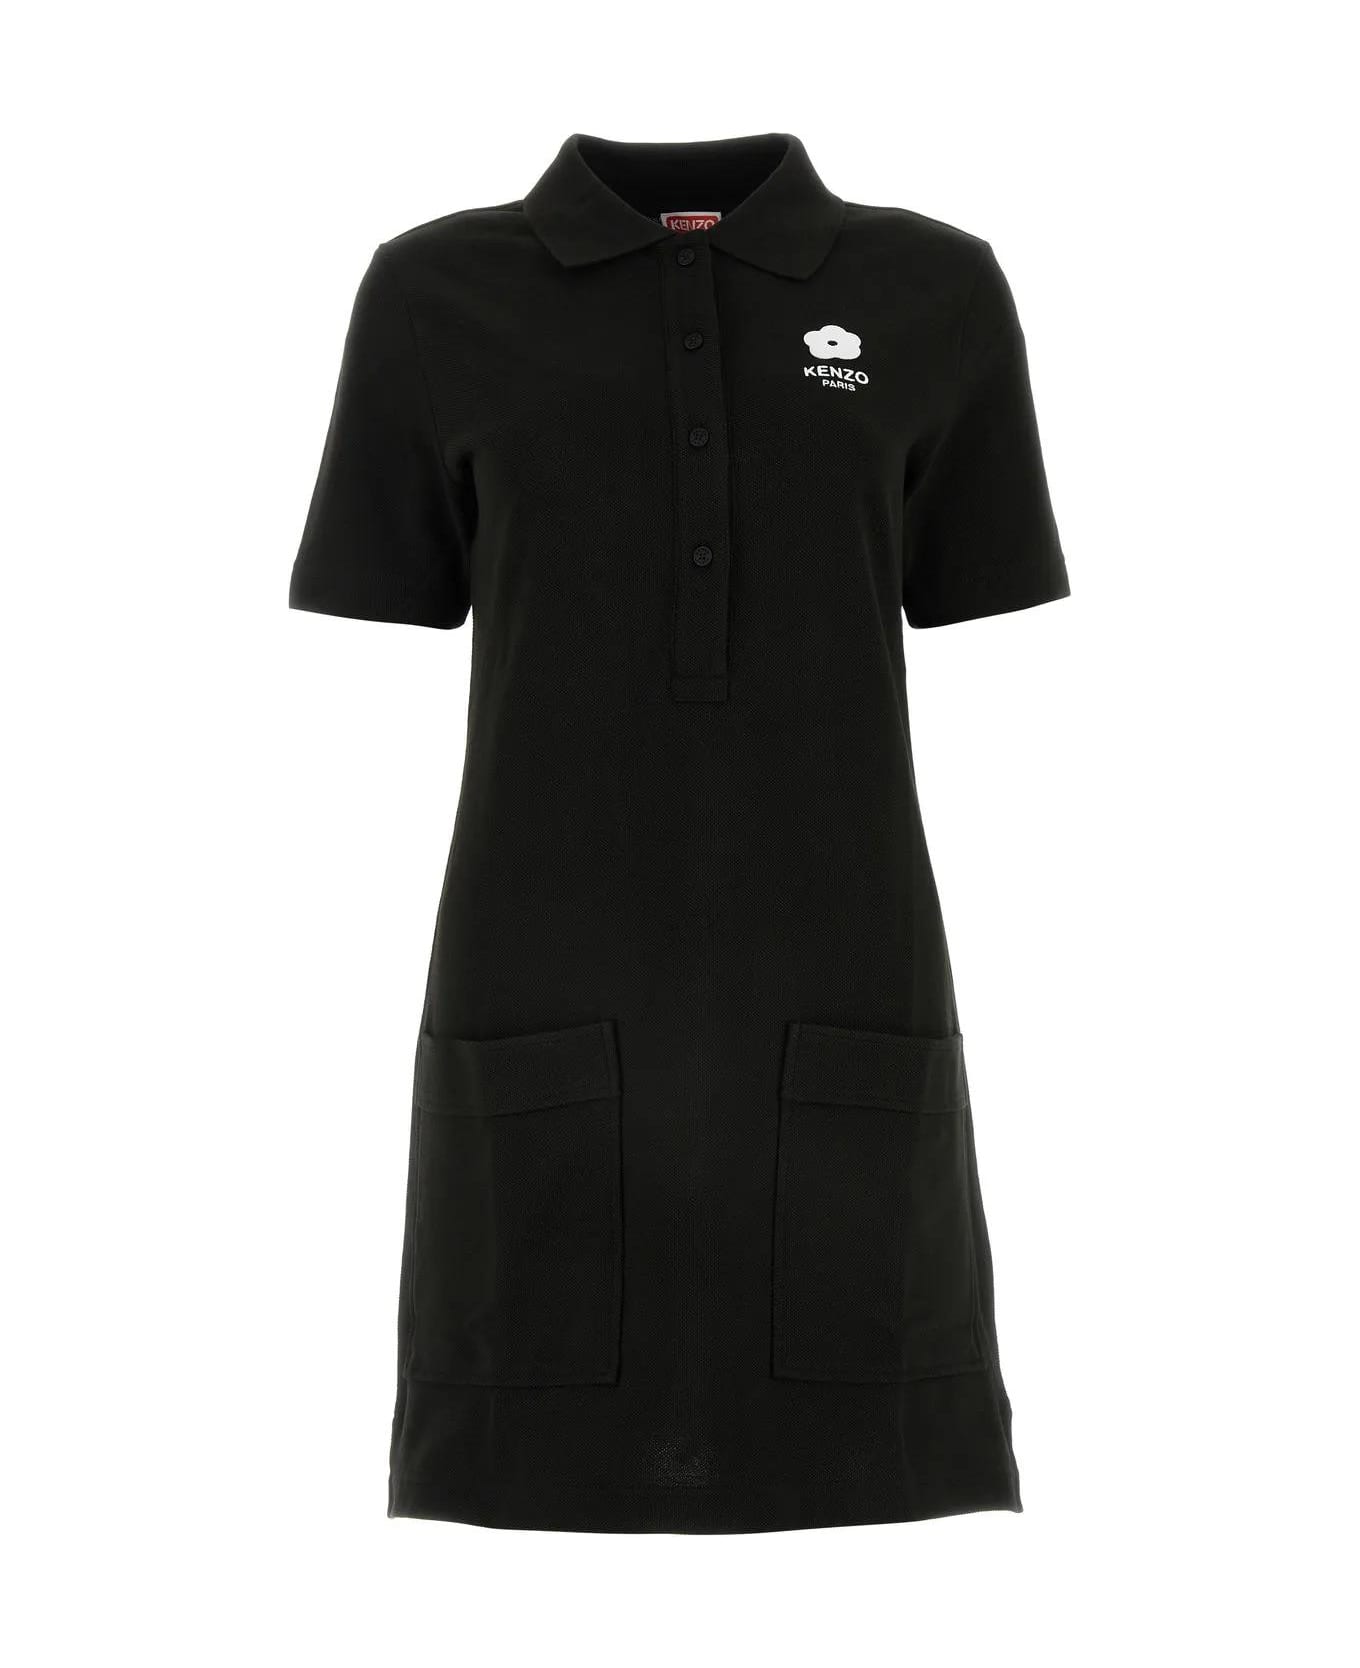 Kenzo Black Piquet Polo Dress - Noir ポロシャツ